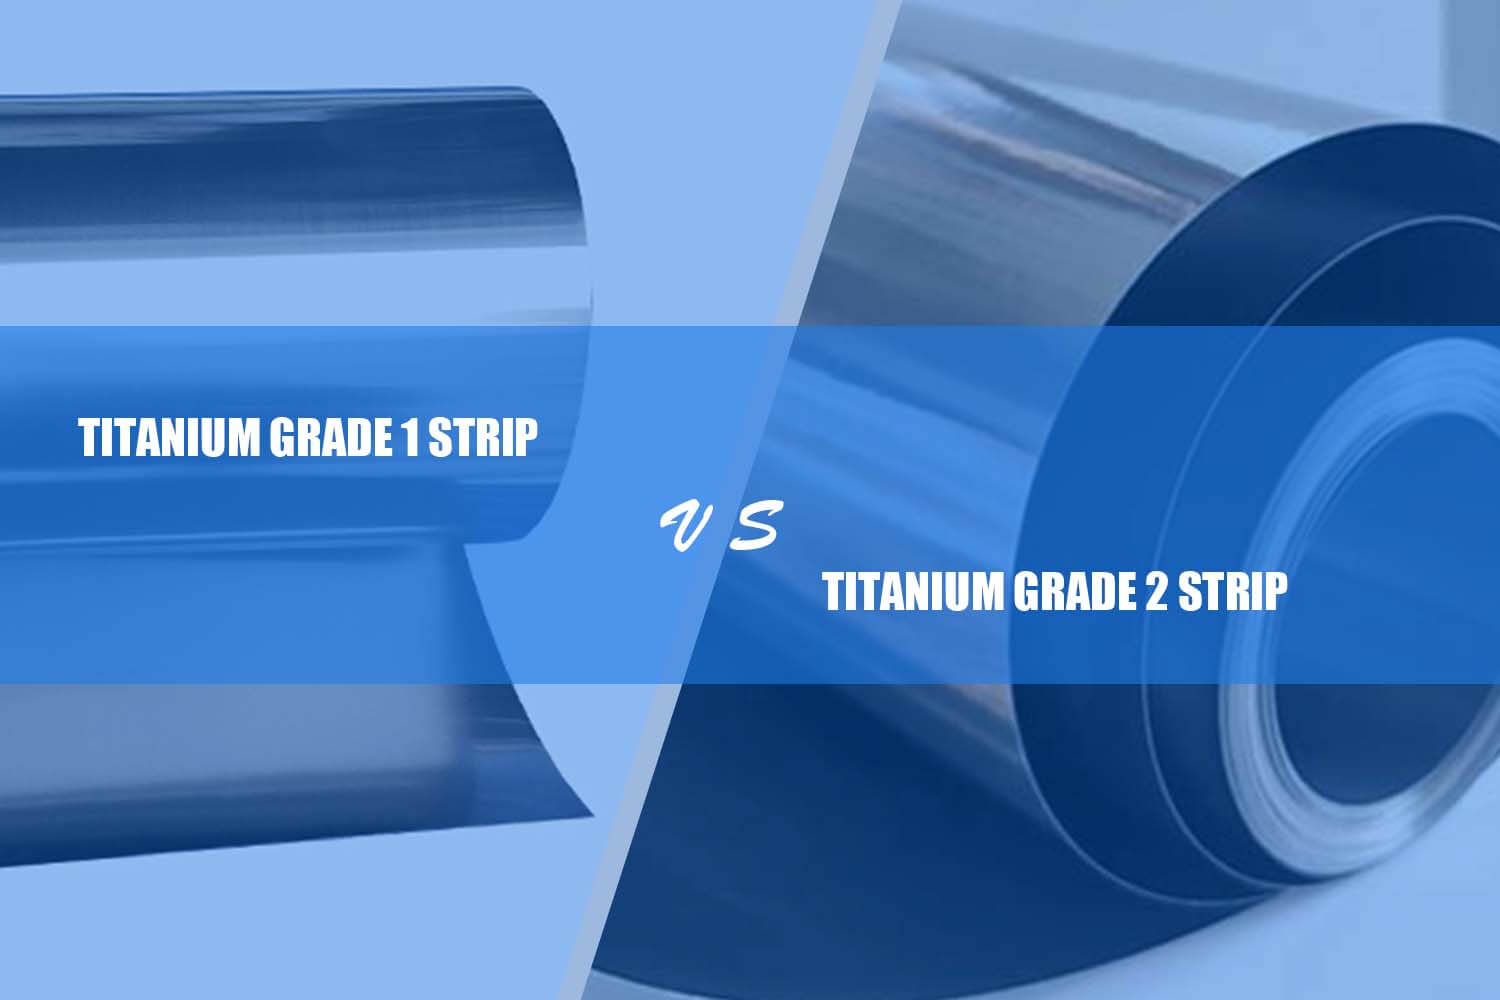 titanium grade 1 strip vs. titanium grade 2 faixa